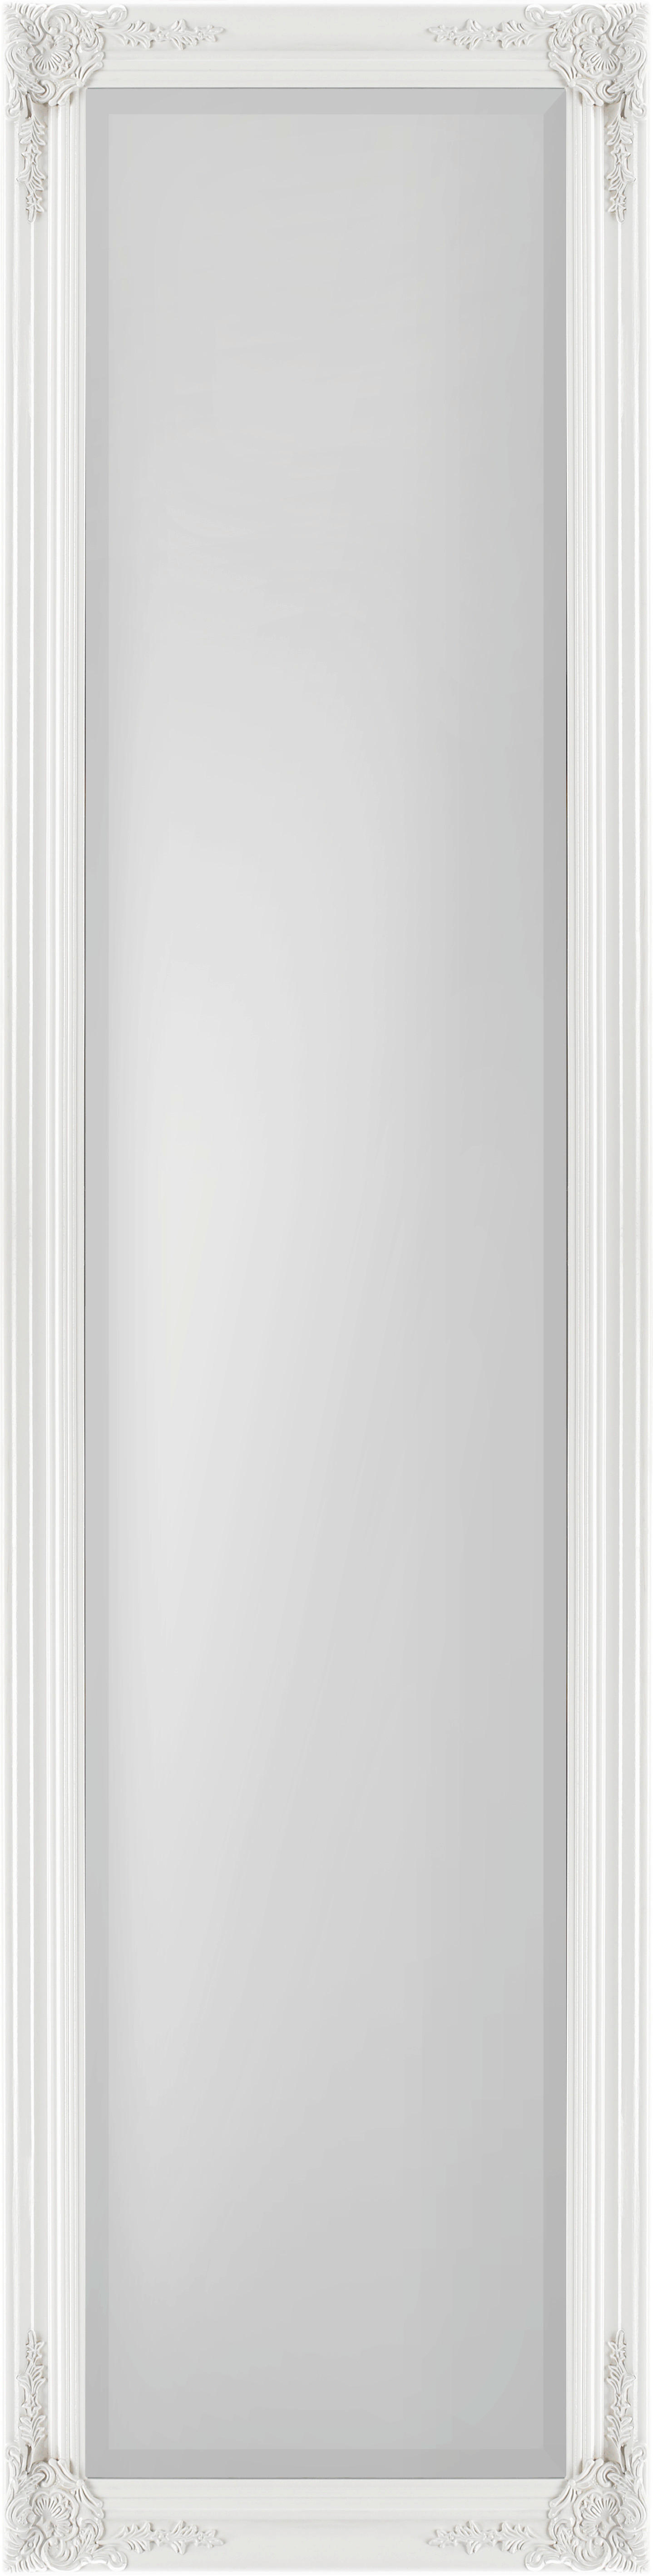 STANDSPIEGEL 45/180/3,3 cm  - Weiß, LIFESTYLE, Holz (45/180/3,3cm) - Carryhome